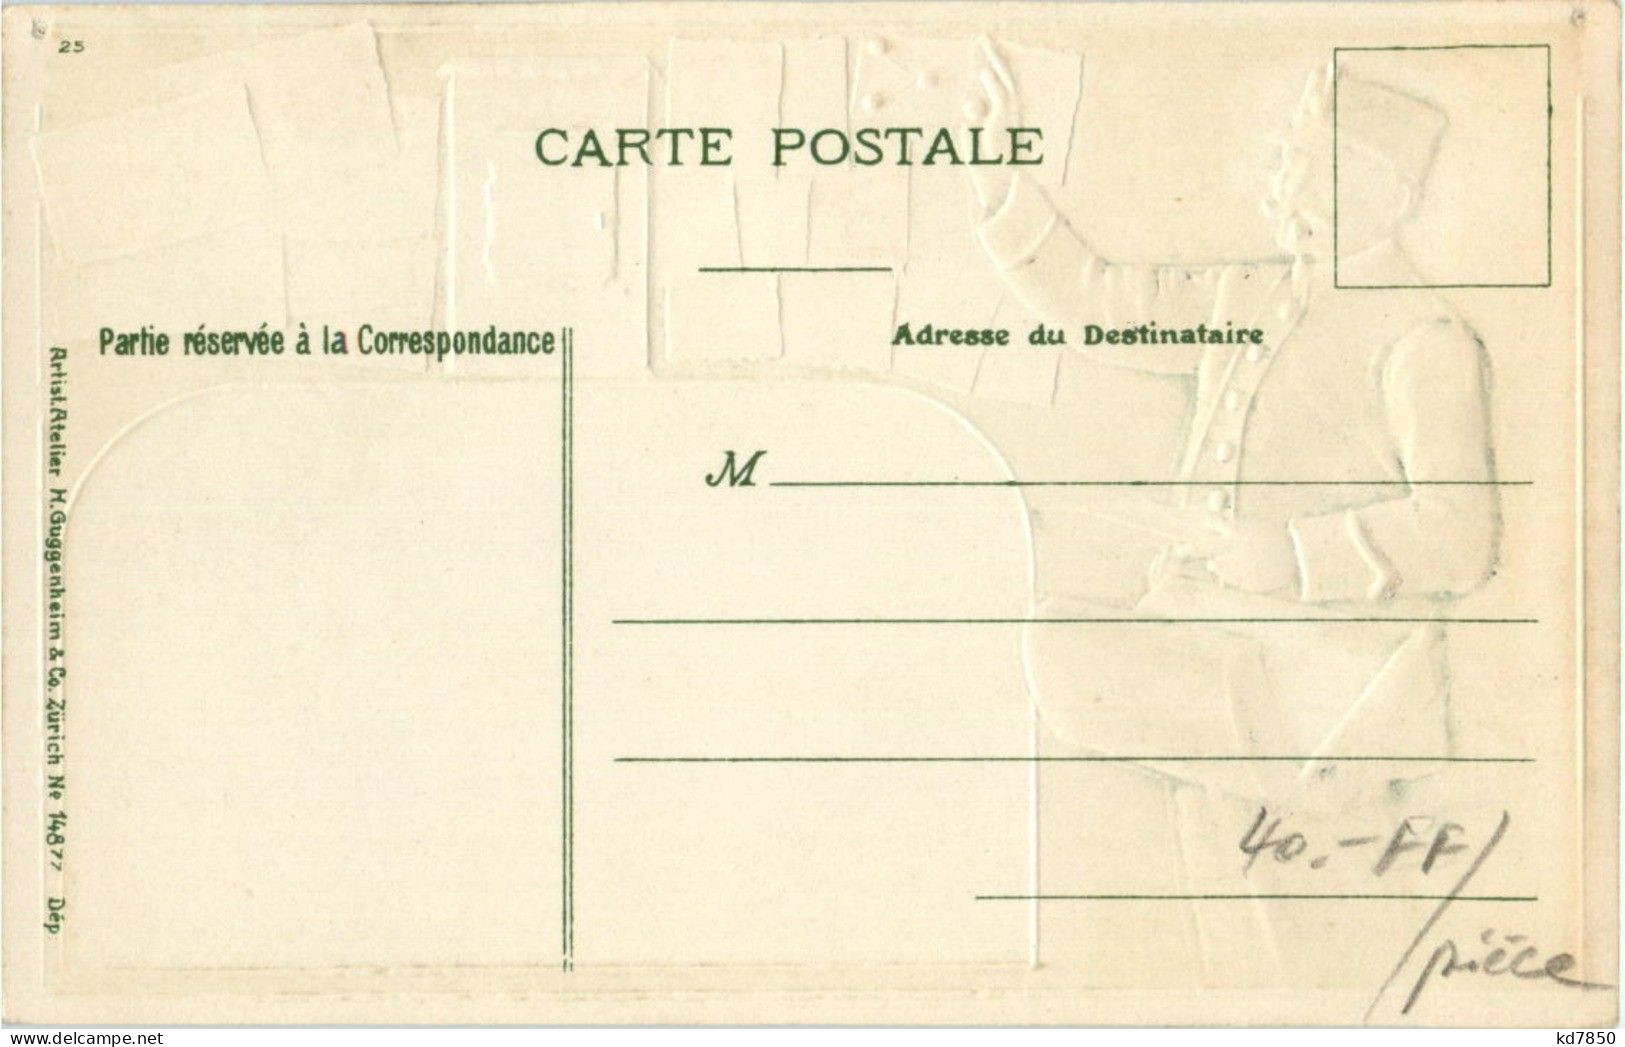 Postbote - Briefmarken - Litho - Correos & Carteros